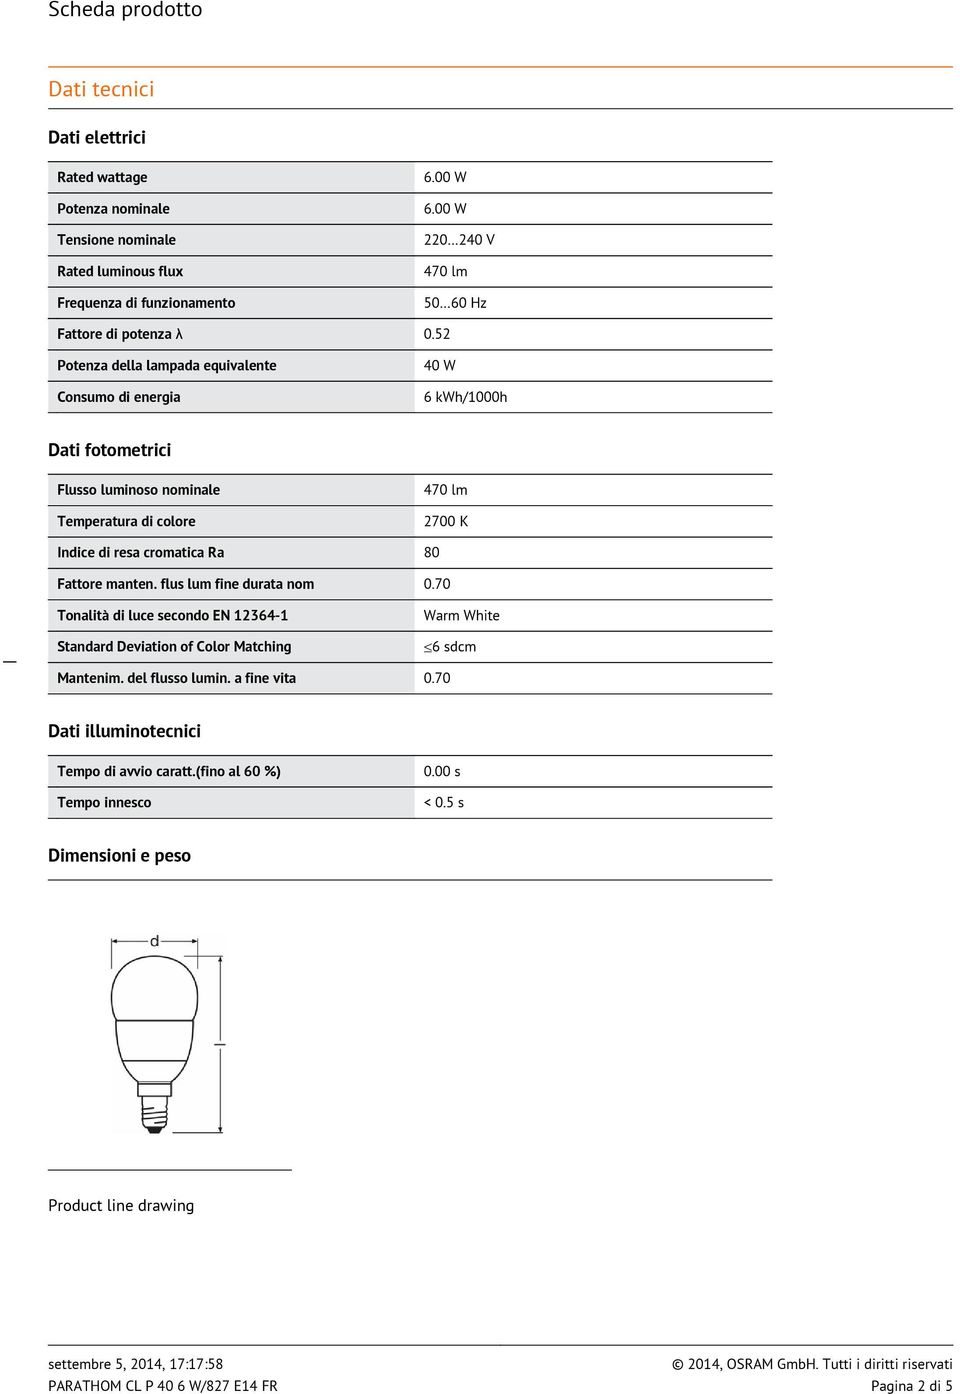 52 Potenza della lampada equivalente Consumo di energia 40 W 6 kwh/1000h Dati fotometrici Flusso luminoso nominale Temperatura di colore 470 lm 2700 K Indice di resa cromatica